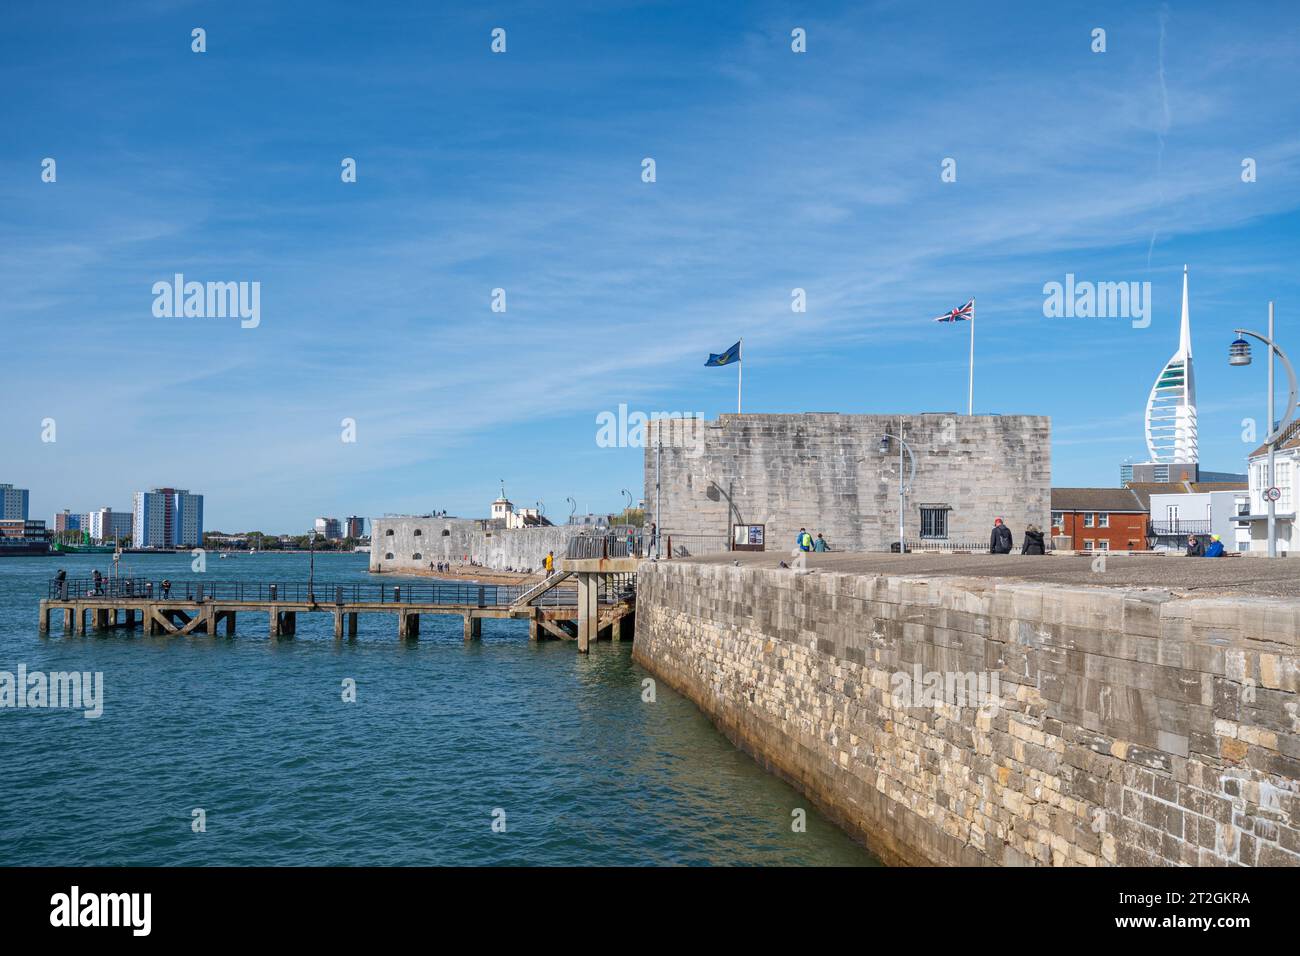 Fortifications historiques Old Portsmouth le long du front de mer, avec la tour carrée, le mur de mer et la tour ronde, Hampshire, Angleterre, Royaume-Uni Banque D'Images